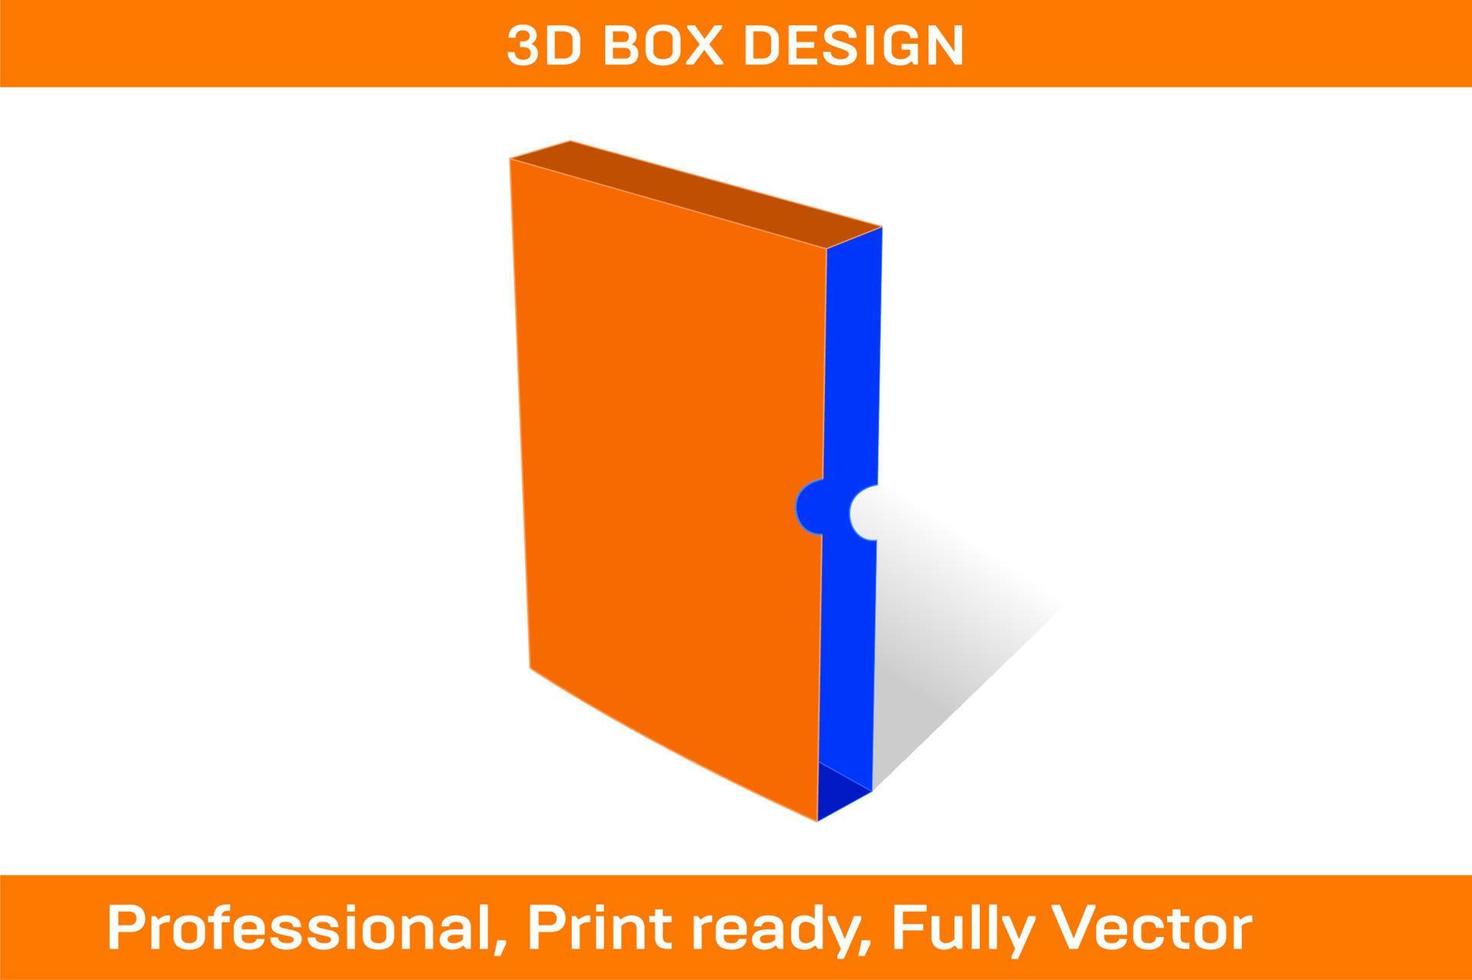 seitlich offene Buchbox 22,9 x 15,2 x 3,8 cm, Buchumschlagbox Stanzschablone und 3D-Box vektor